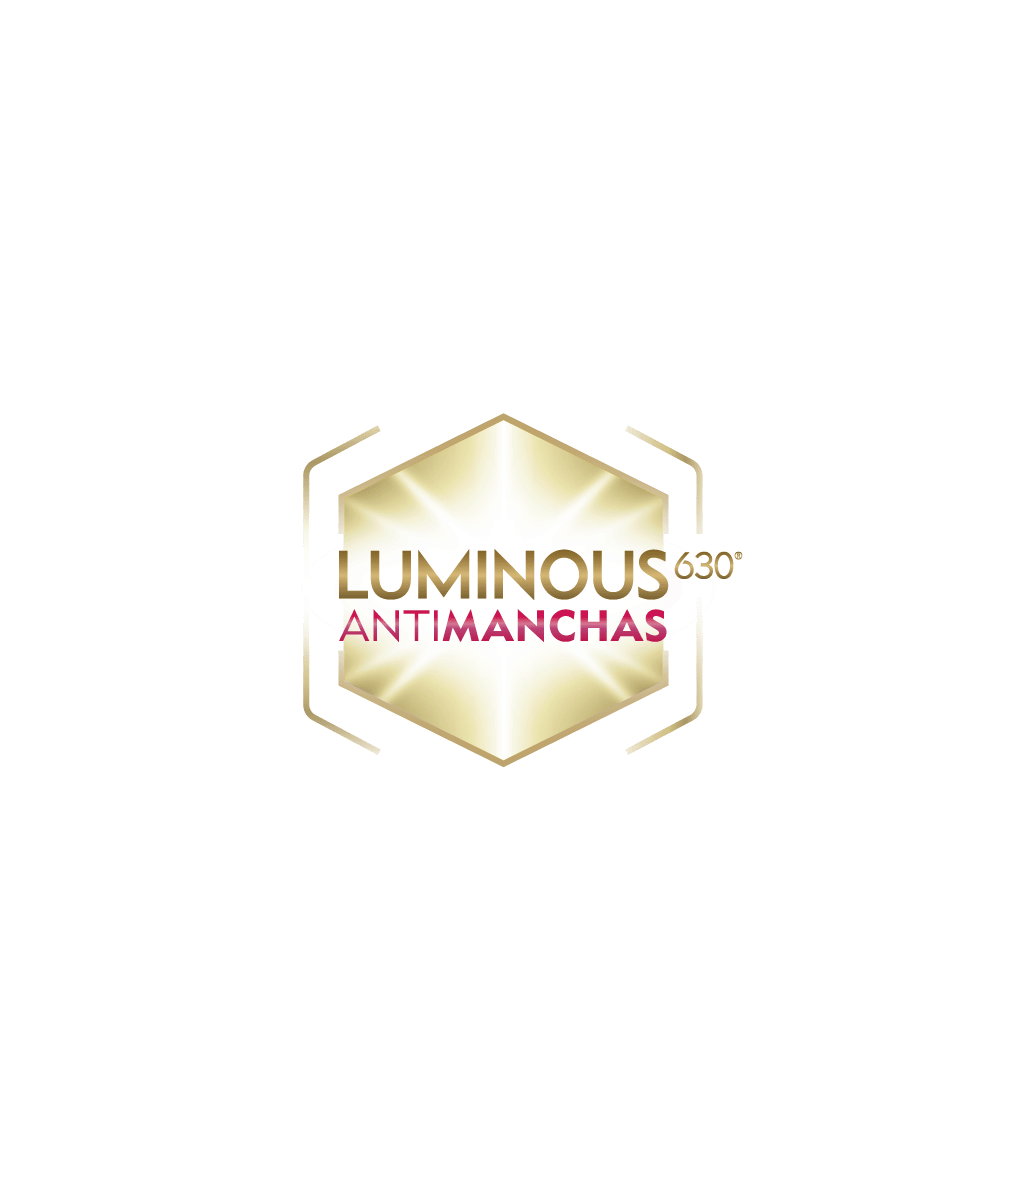 Luminous630 Antimanchas Crema de Manos Avanzada | NIVEA